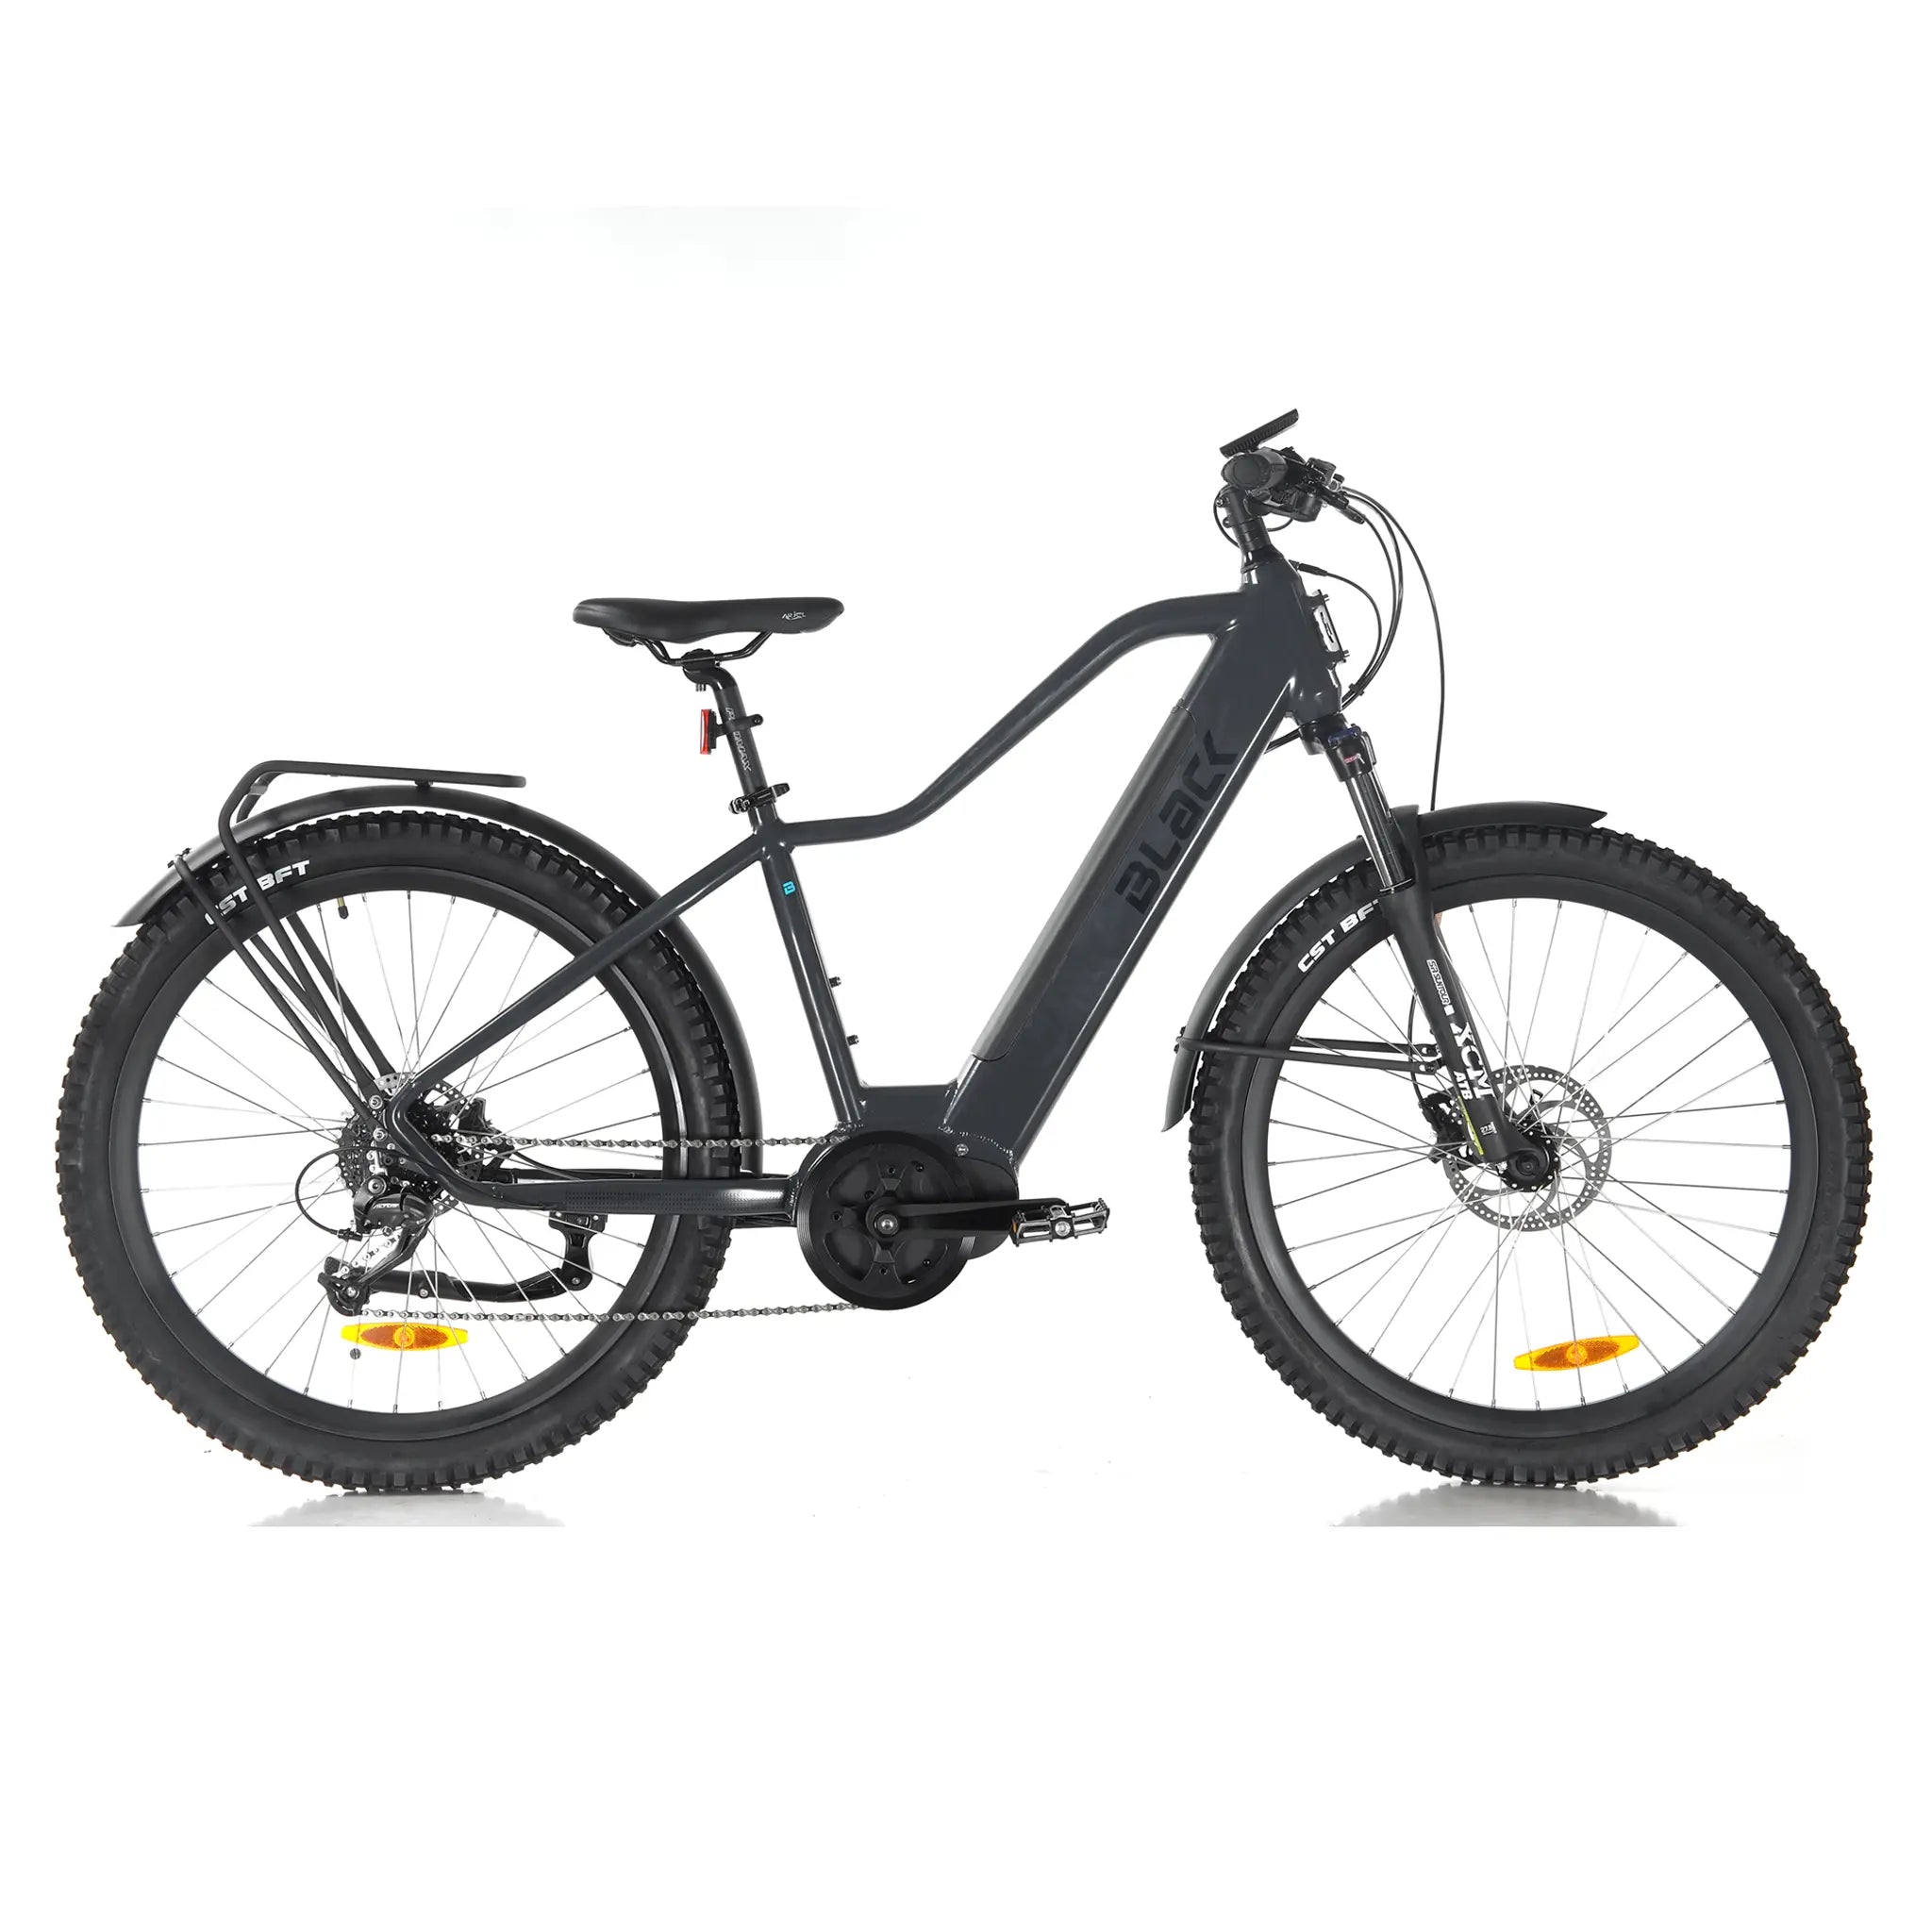 Black ATB-H (All terrain) E-Bike